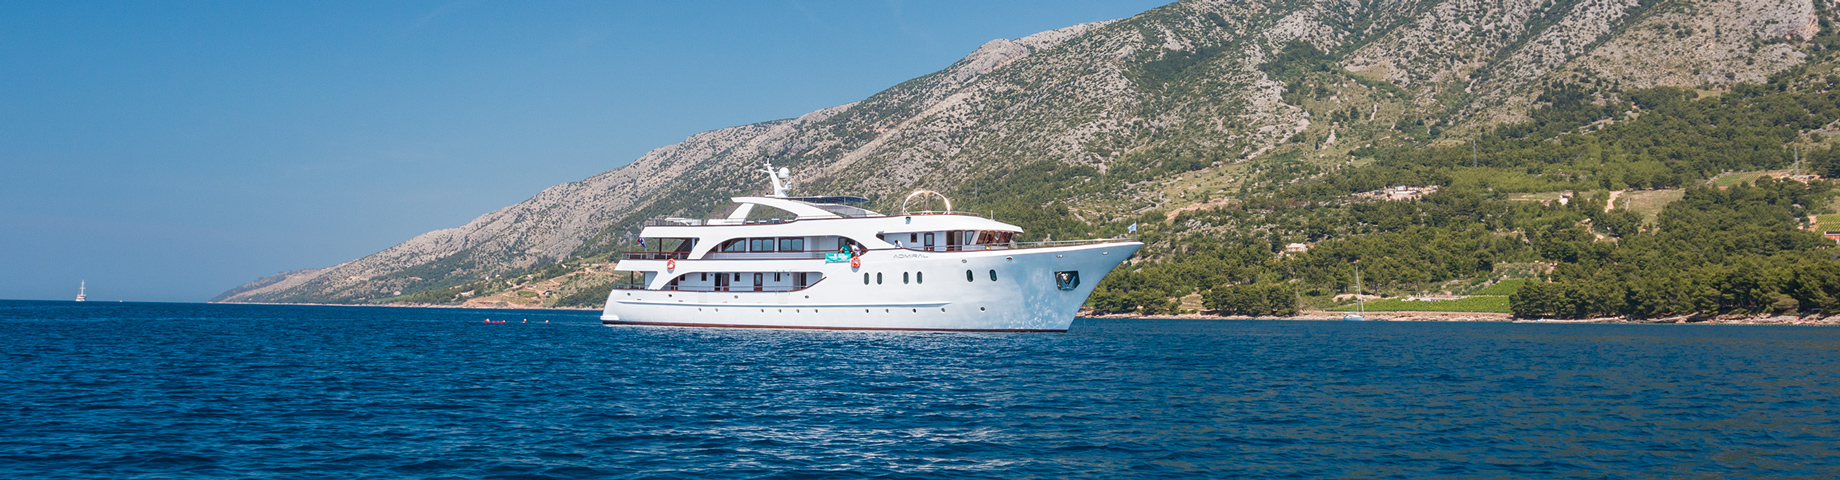 Cruatian Superior Yacht Cruise, Dalmatian Paradise